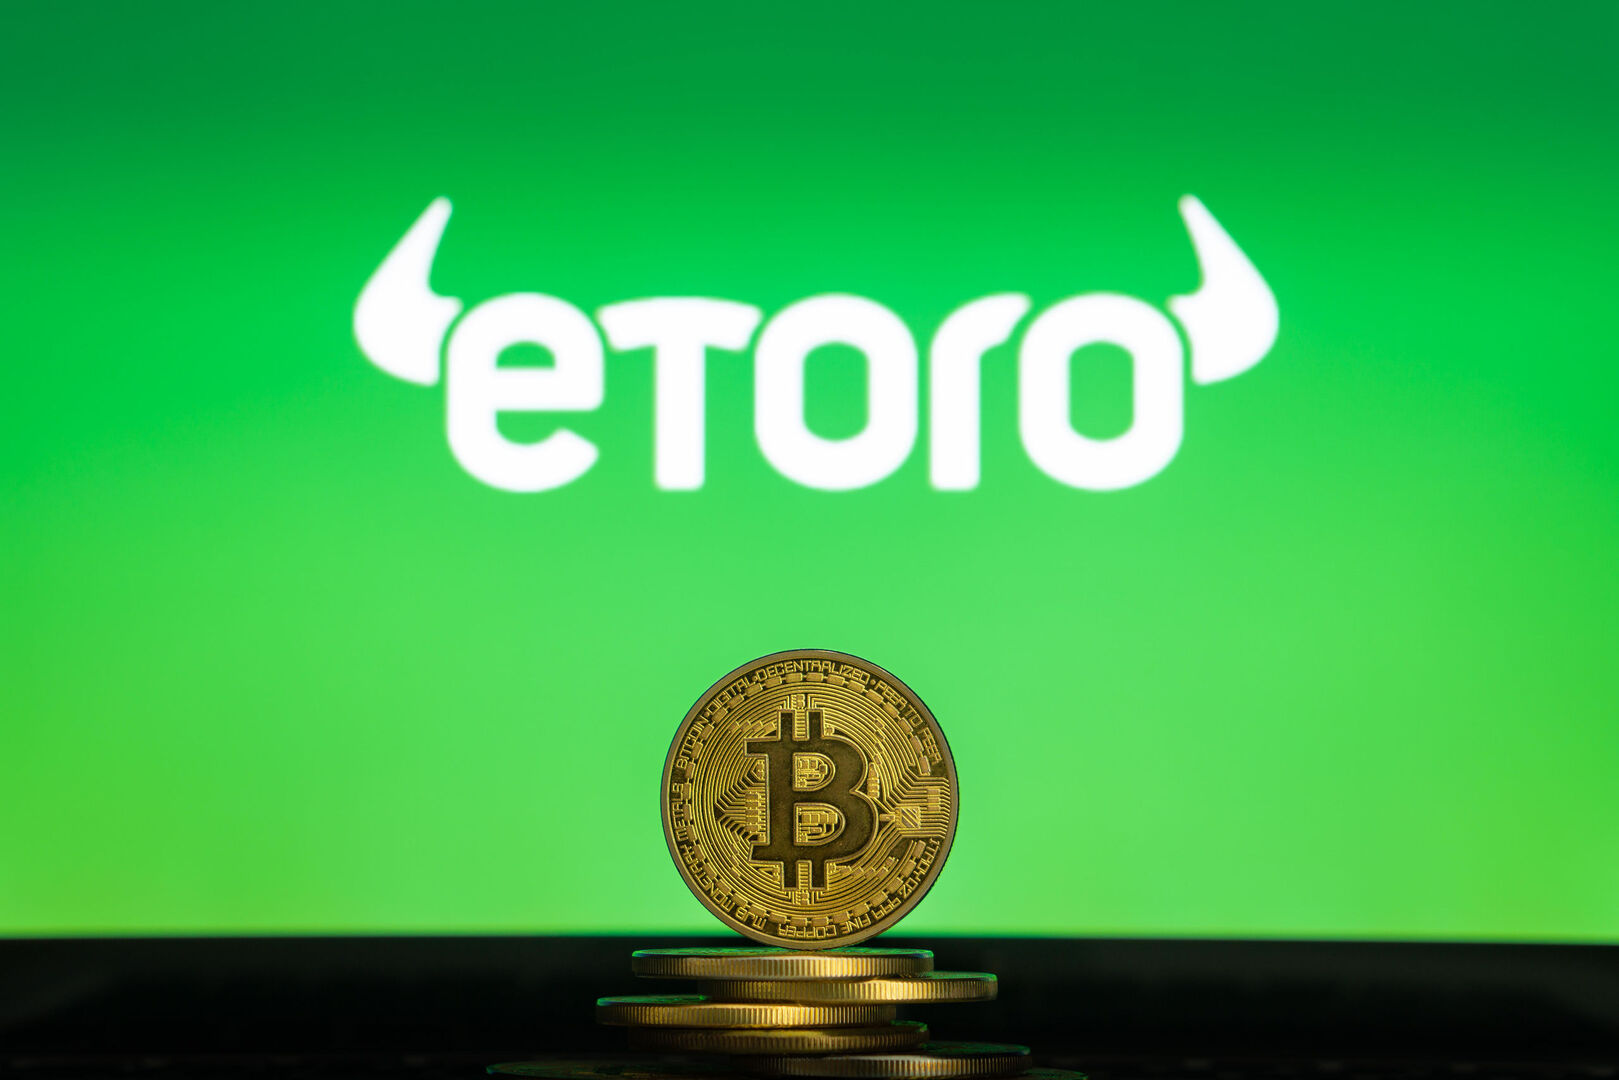 eToro eyes IPO valued at over $3.5 billion